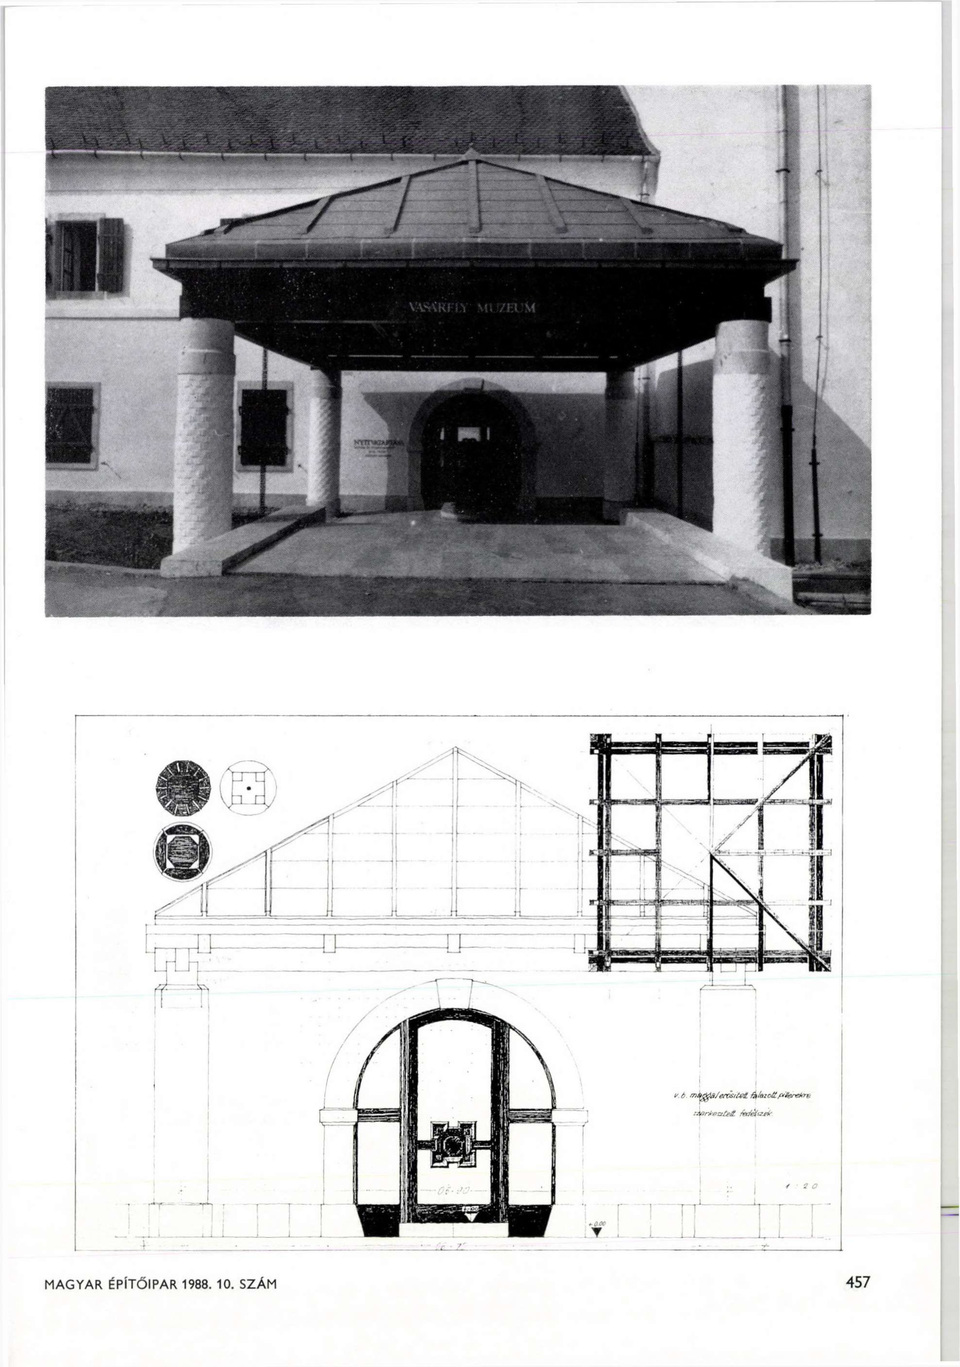 A Vasarely Múzeum bejárati építménye. Forrás: Magyar Építőipar, 1988